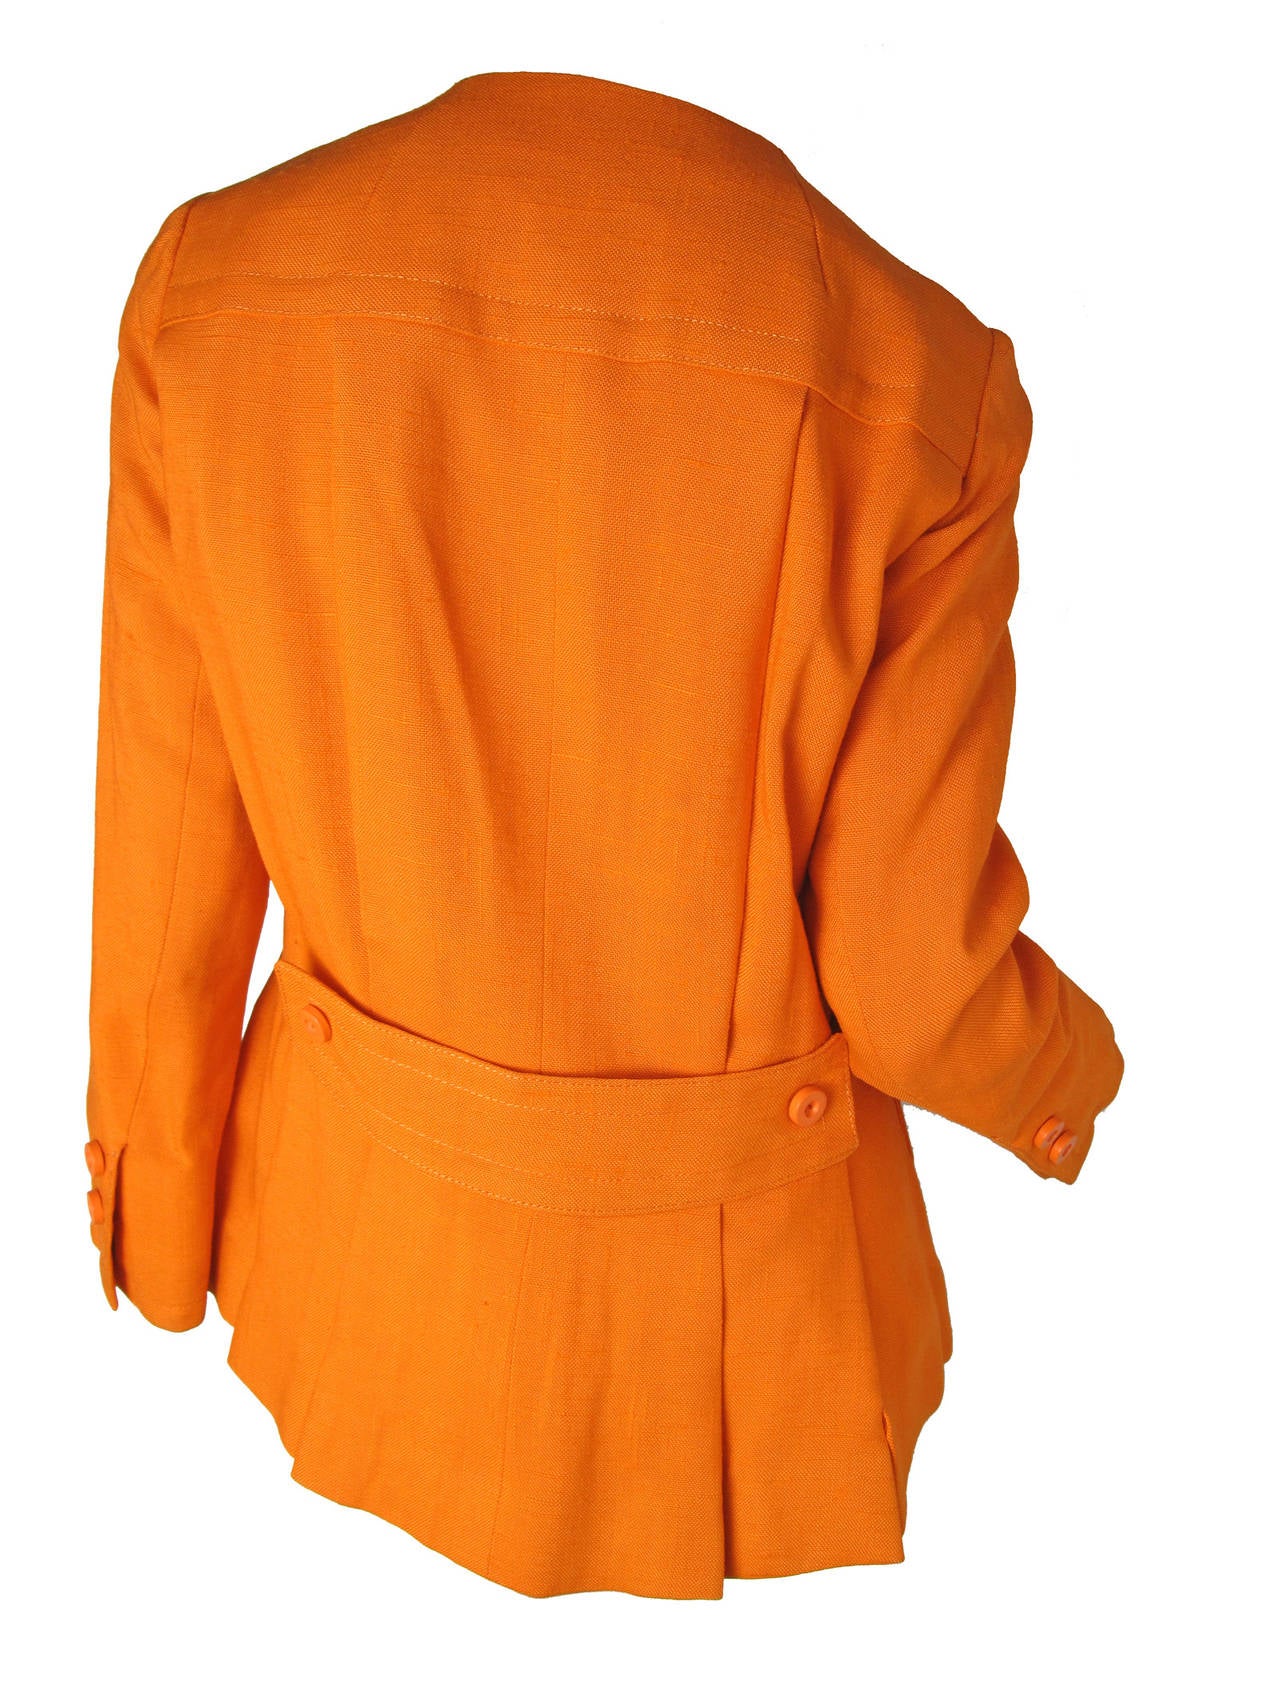 Geoffrey Beene Boutique Orange Linen Jacket In Excellent Condition In Austin, TX